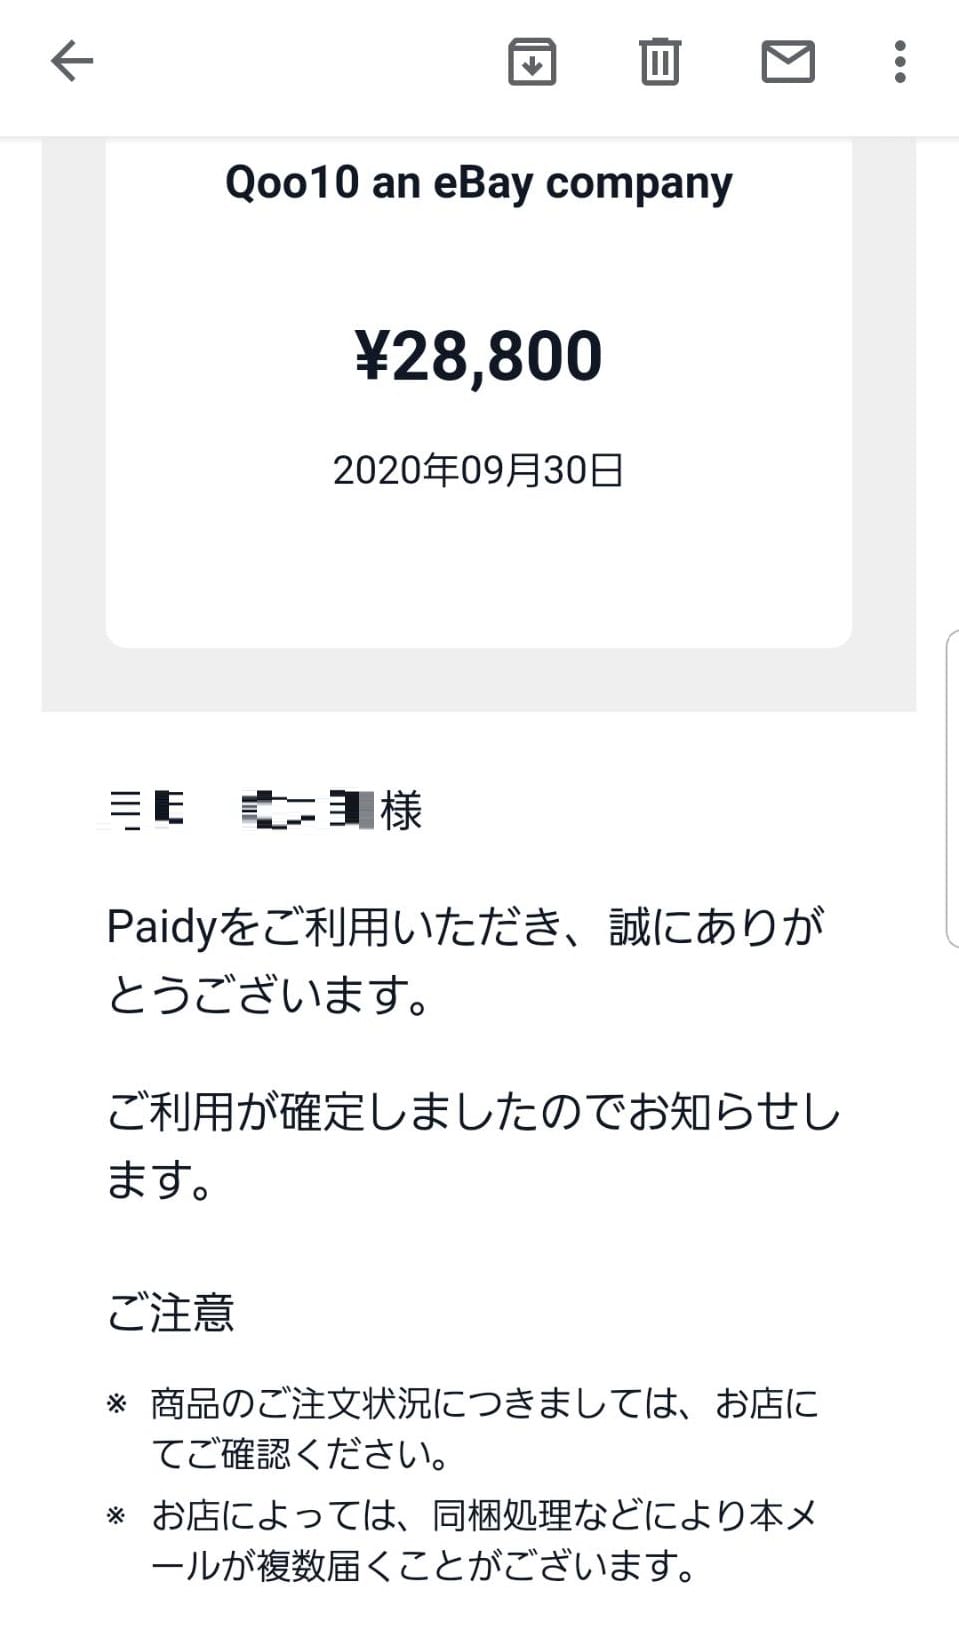 Qoo10で売っているニンテンドースイッチライトがPaidy(ペイディ)で購入できた画像